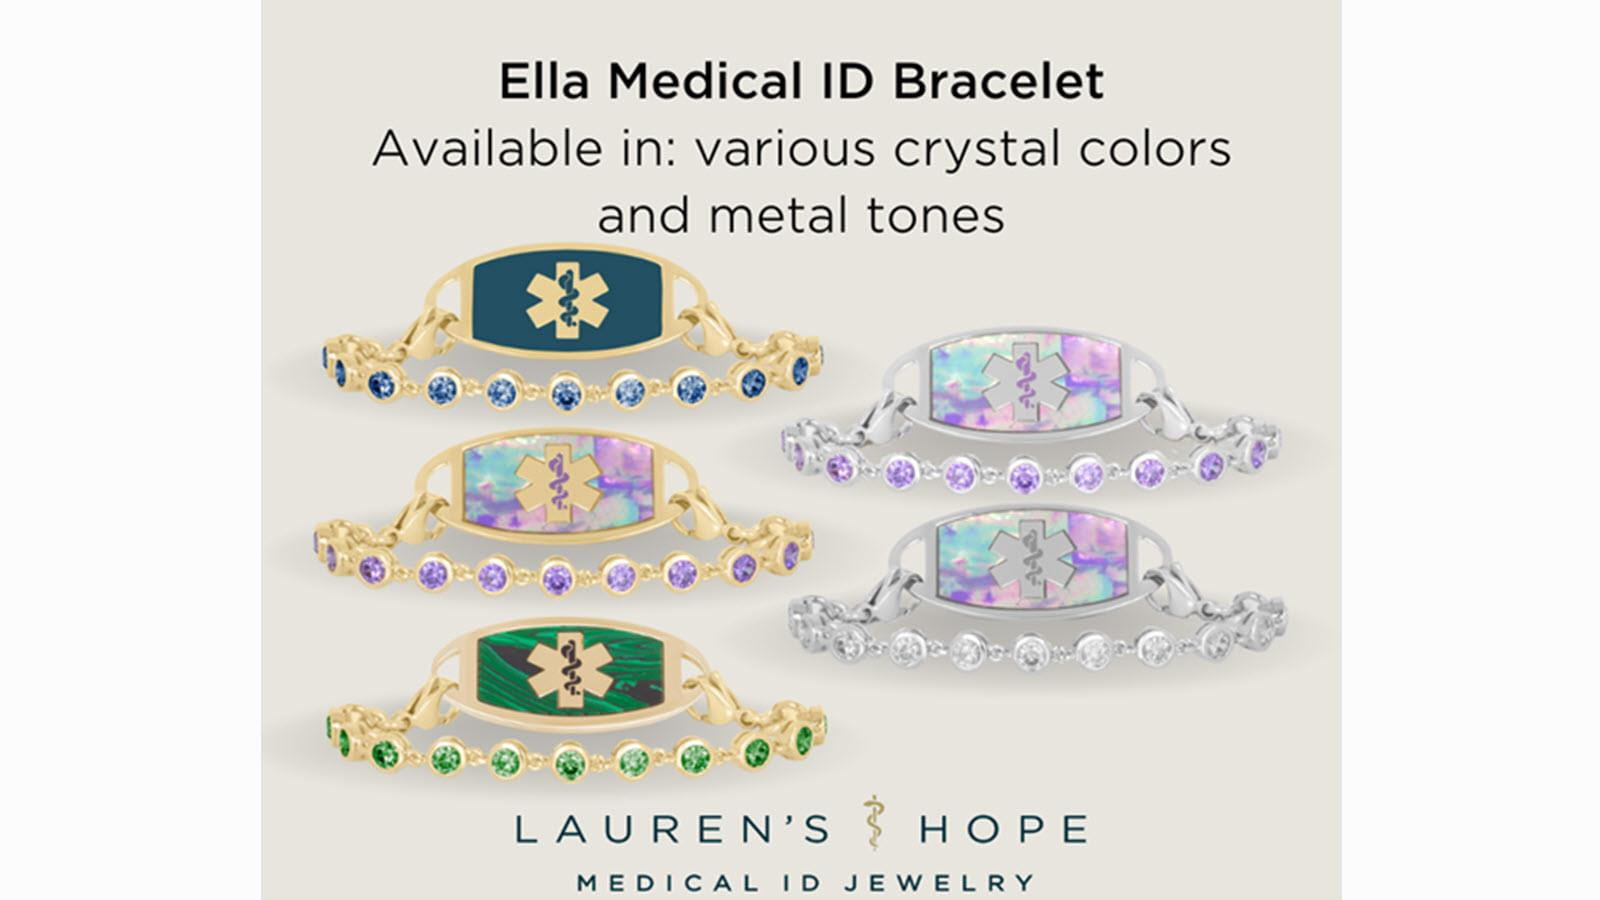 Sparkly colorful medical alert bracelets